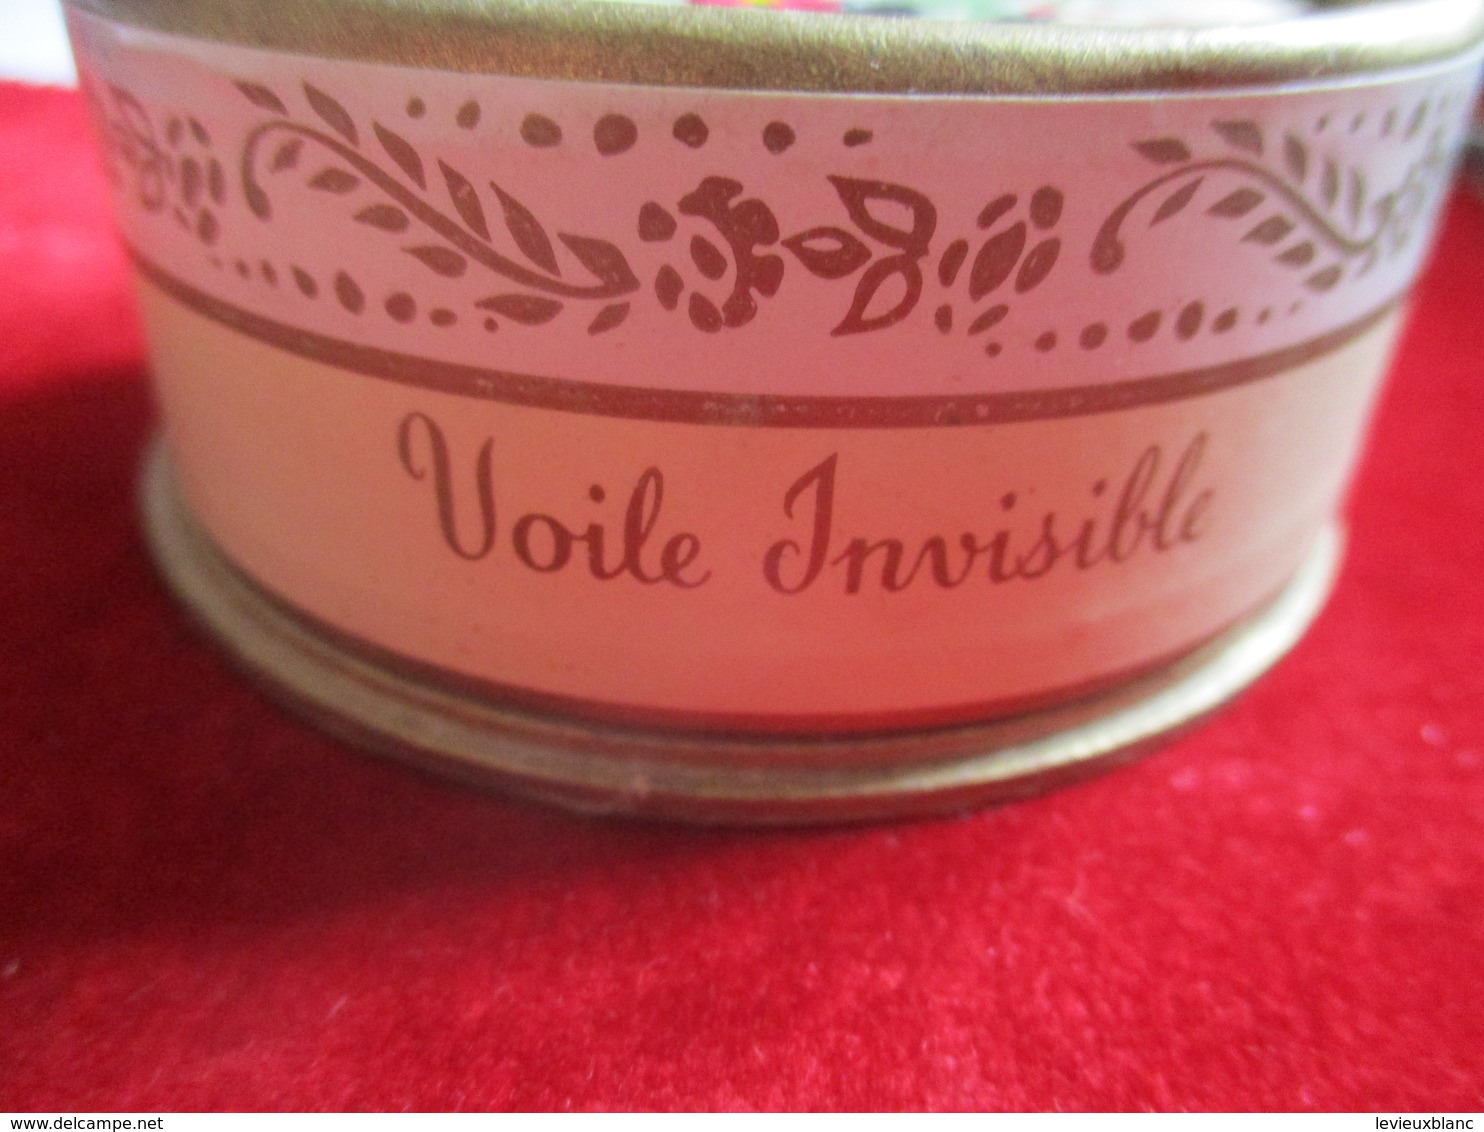 Maquillage/Boite de Poudre de riz/Elisabeth ARDEN/Paris/ Voile Invisible /Vers 1930-50    PARF185